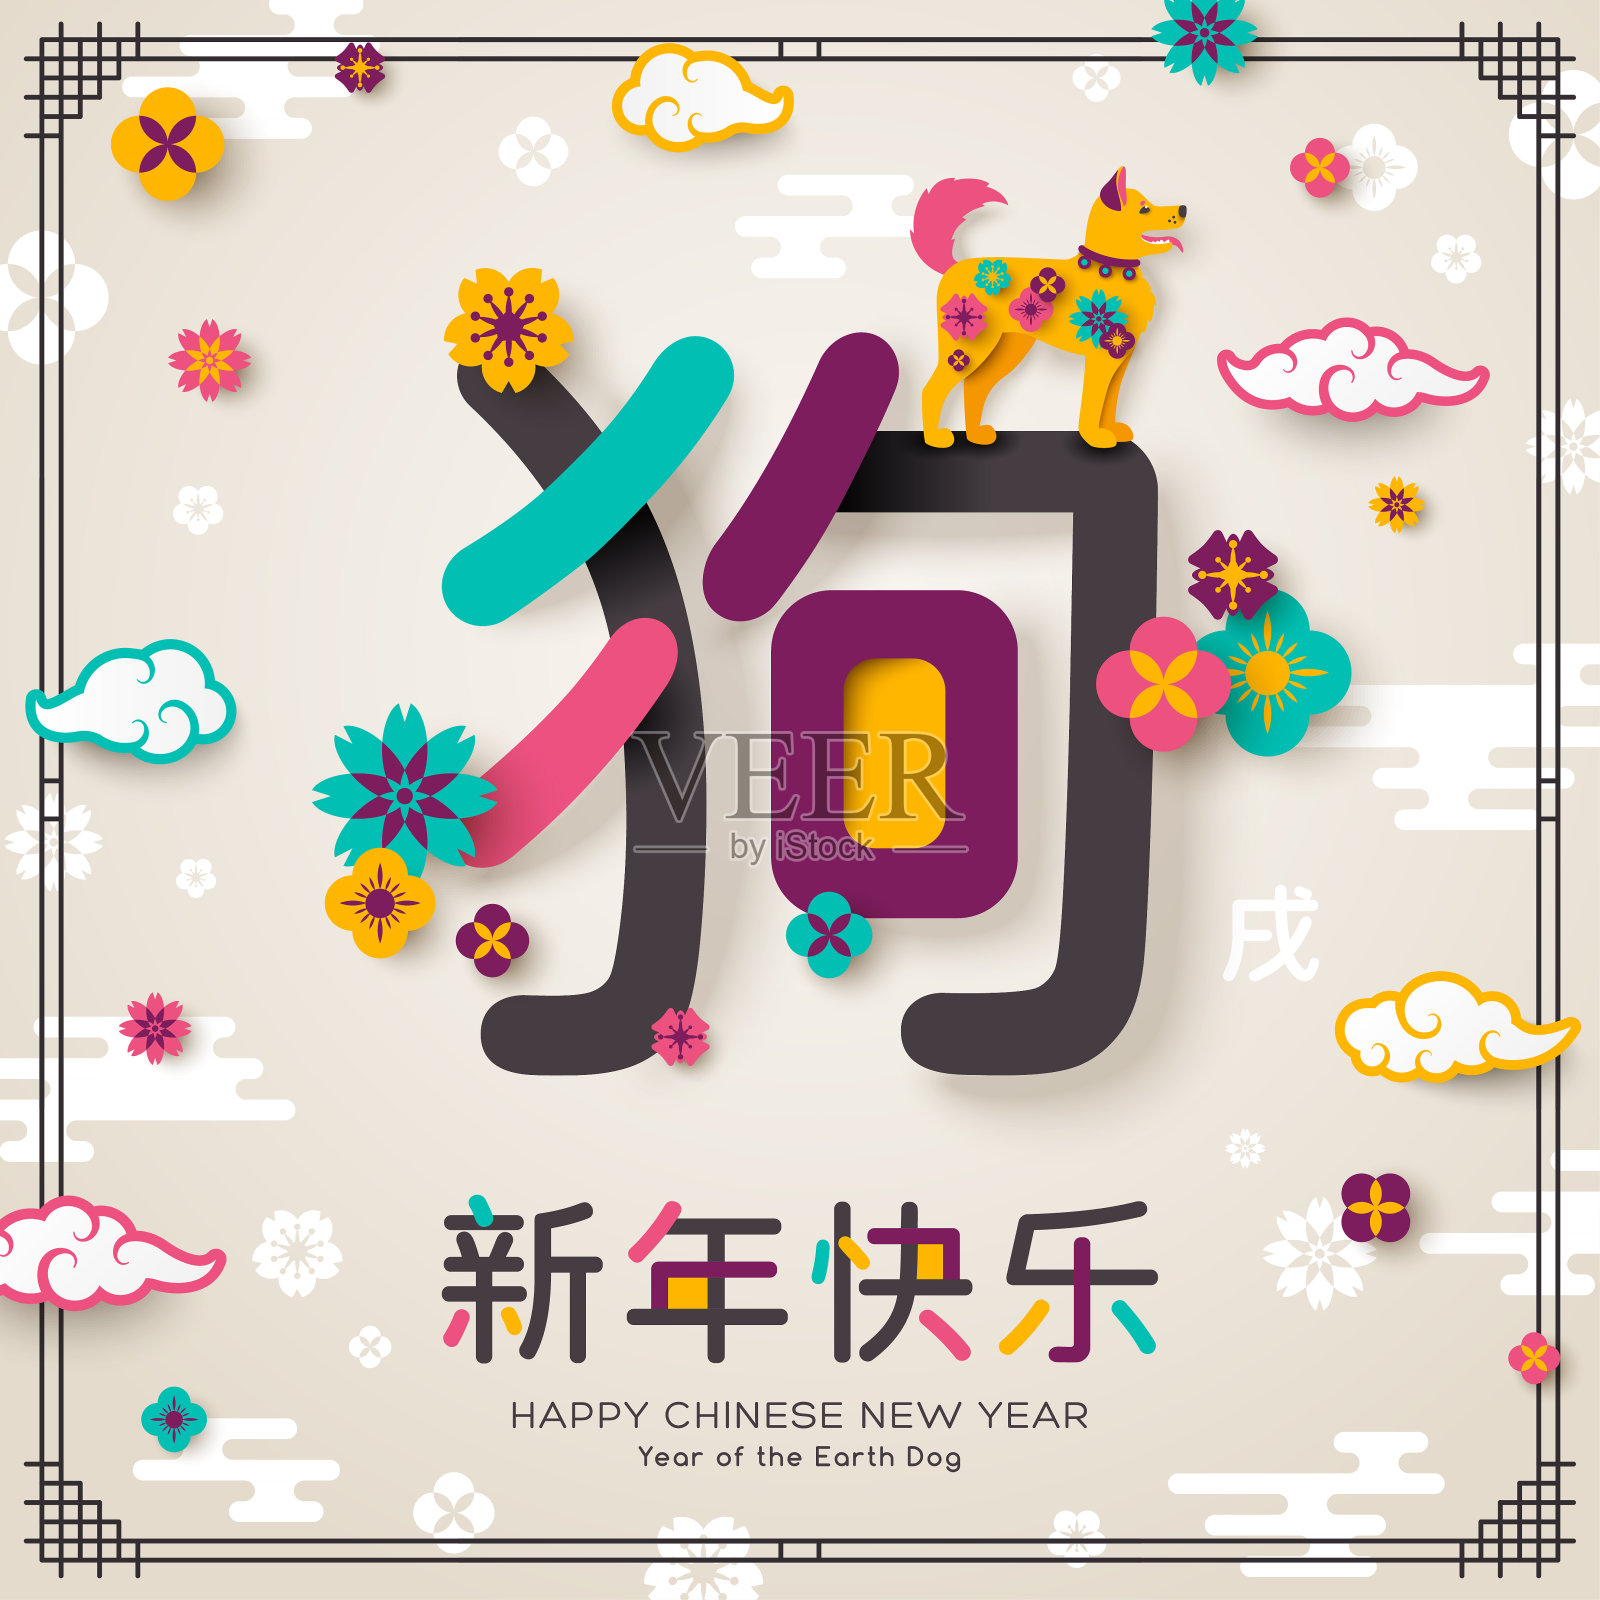 中国新年贺年卡与象形狗设计模板素材